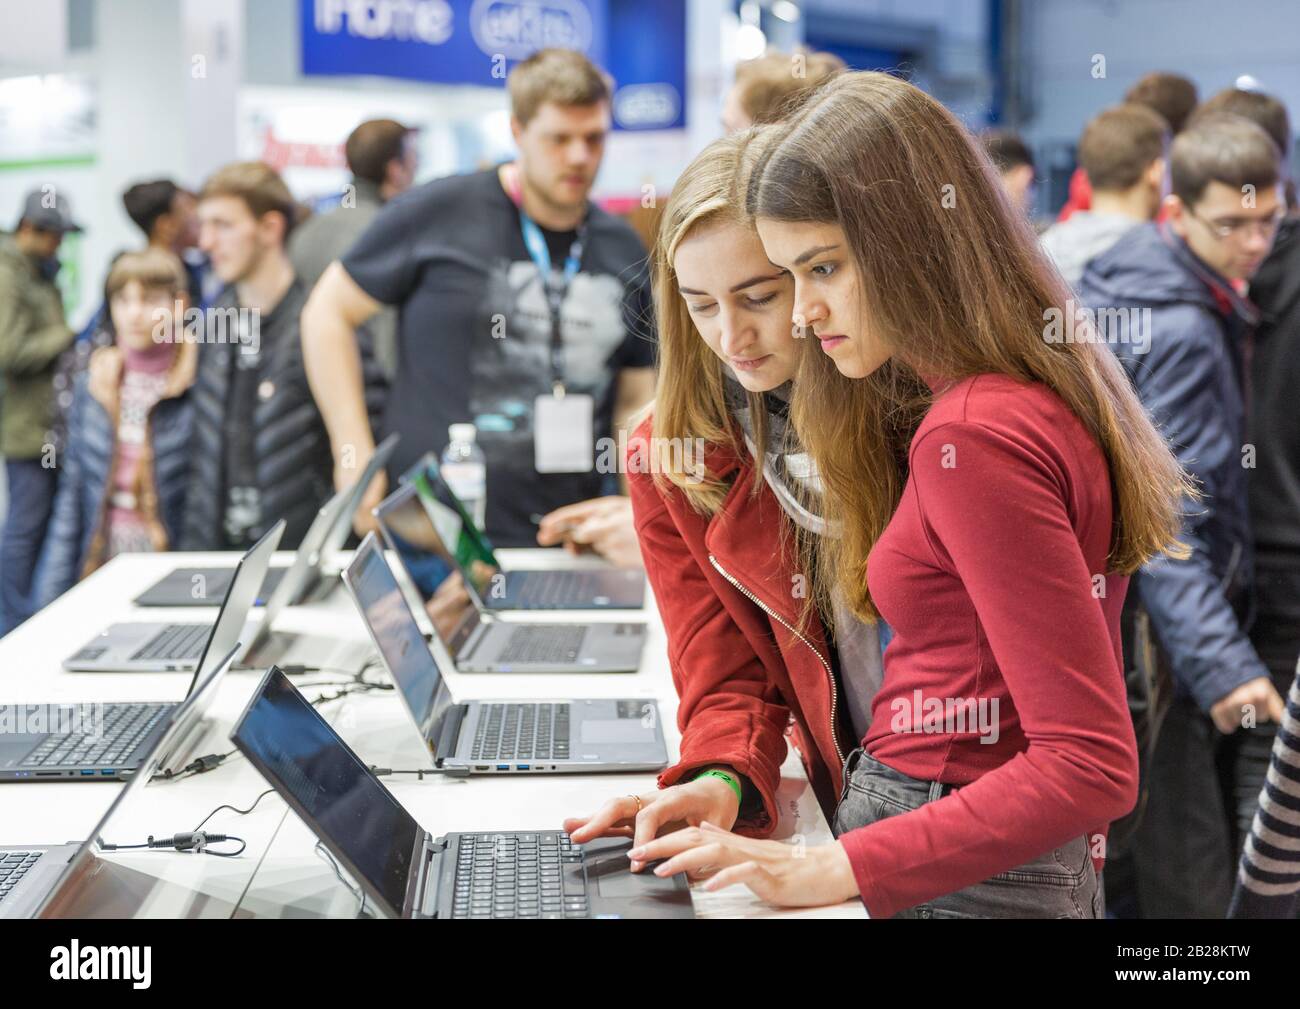 Kiev, UCRAINA - 13 APRILE 2019: Le persone visitano Acer, uno stand internazionale per aziende informatiche con sede a Taiwan durante la CEE 2019, la più grande fiera dell'elettronica Foto Stock